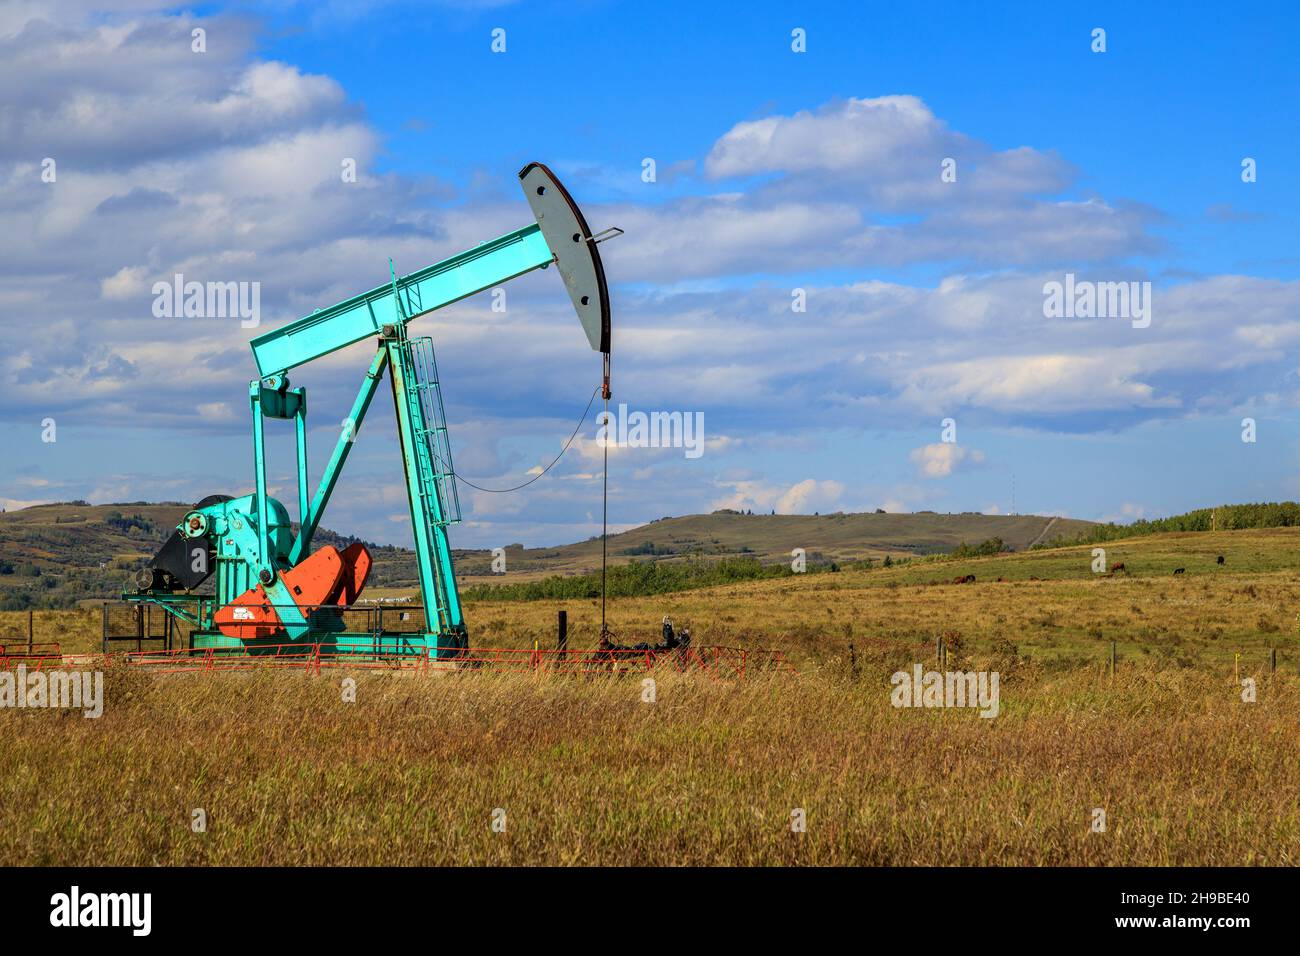 Ein Ölpumpenbock in Alberta, Kanada. Ein Ölpumpenheber ist der Overground-Antrieb für eine Hubkolbenpumpe in einer Ölbohrung. Stockfoto